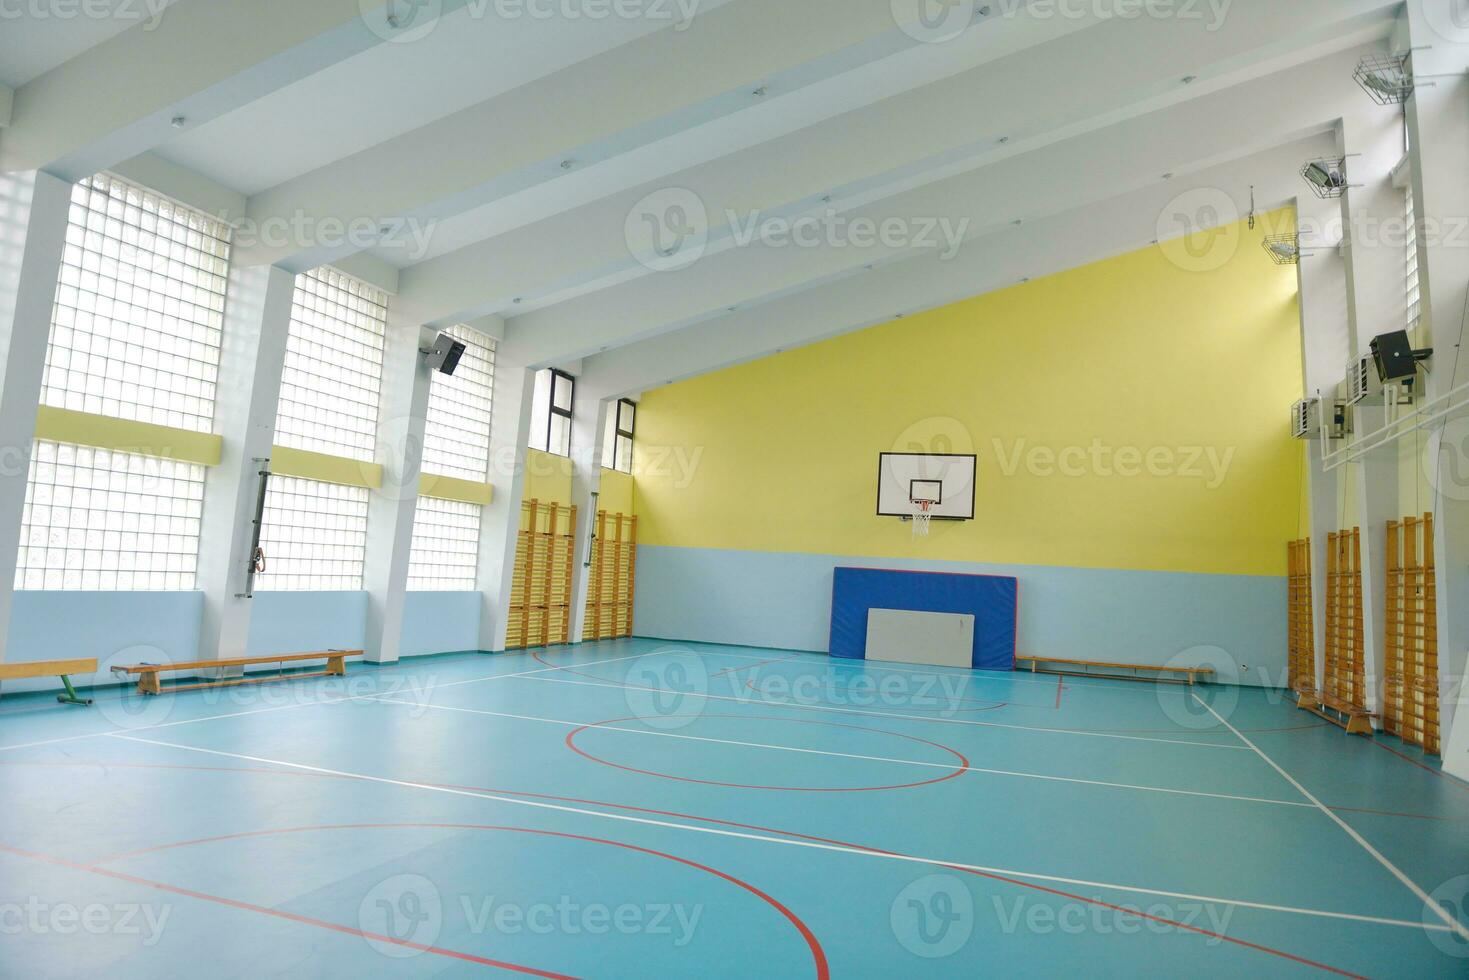 school- Sportschool binnen- foto